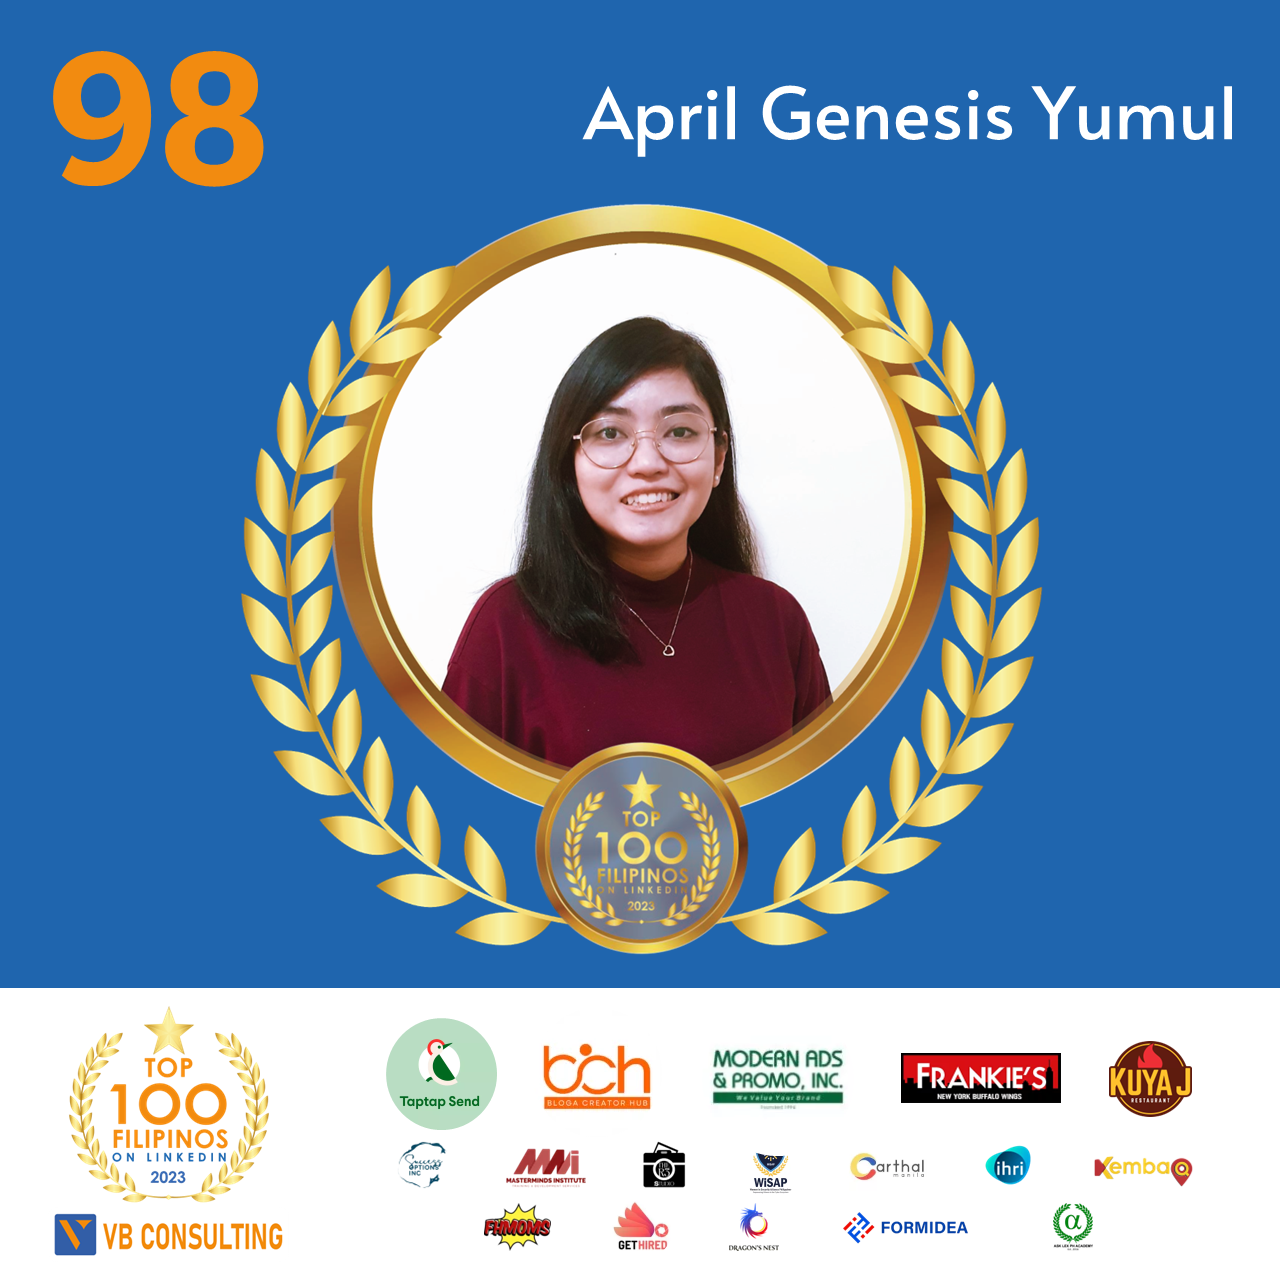 April Genesis Yumul